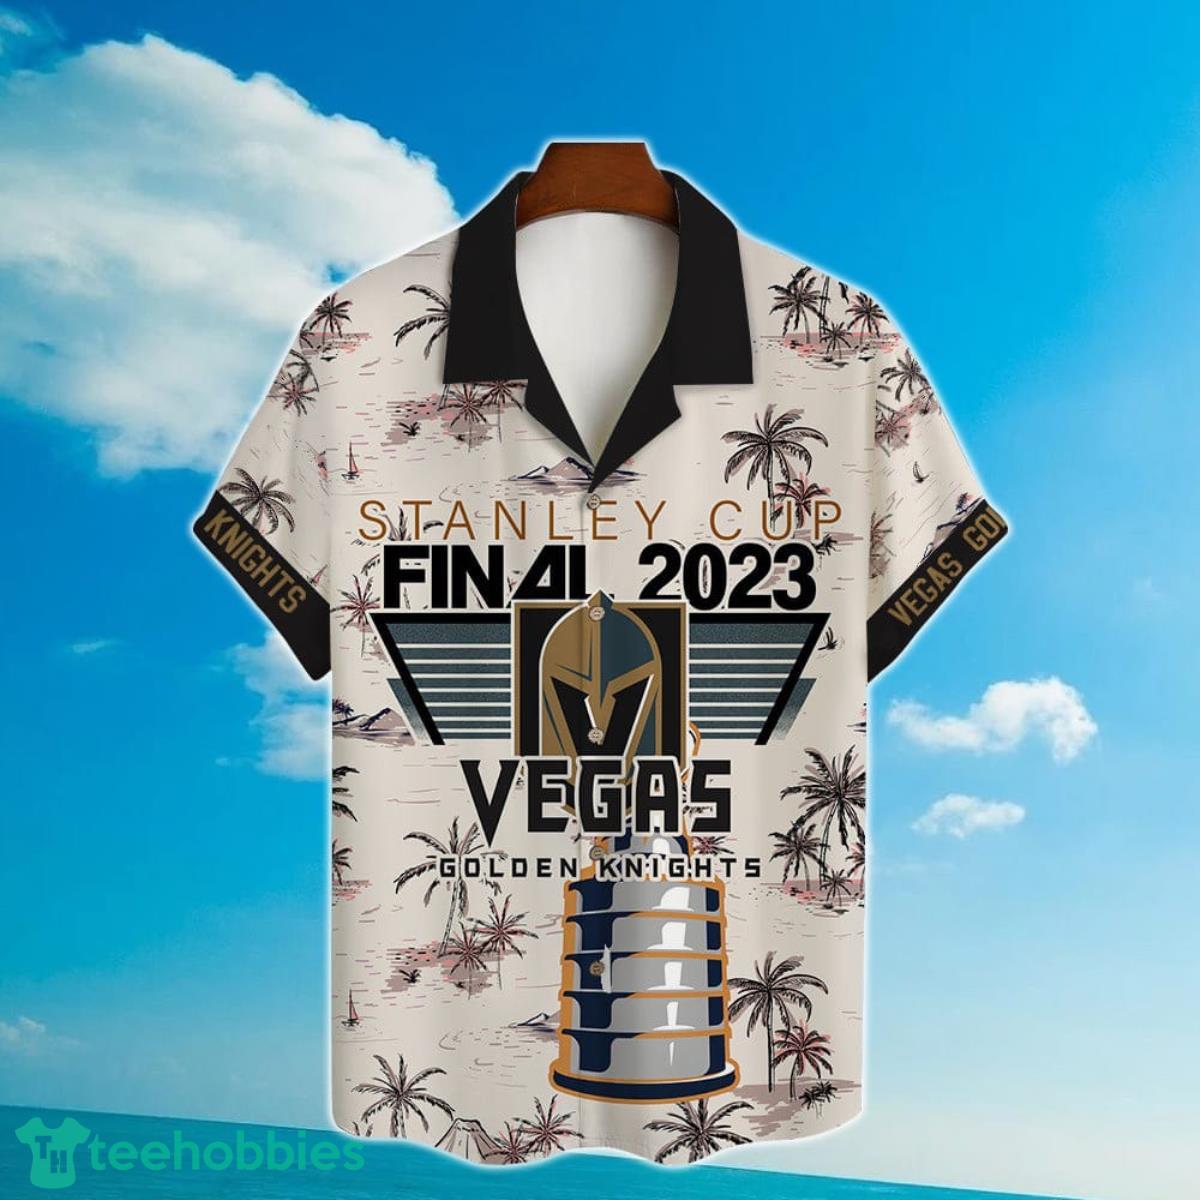 Vegas Golden Knights Full Fandom Moisture Wicking T-Shirt